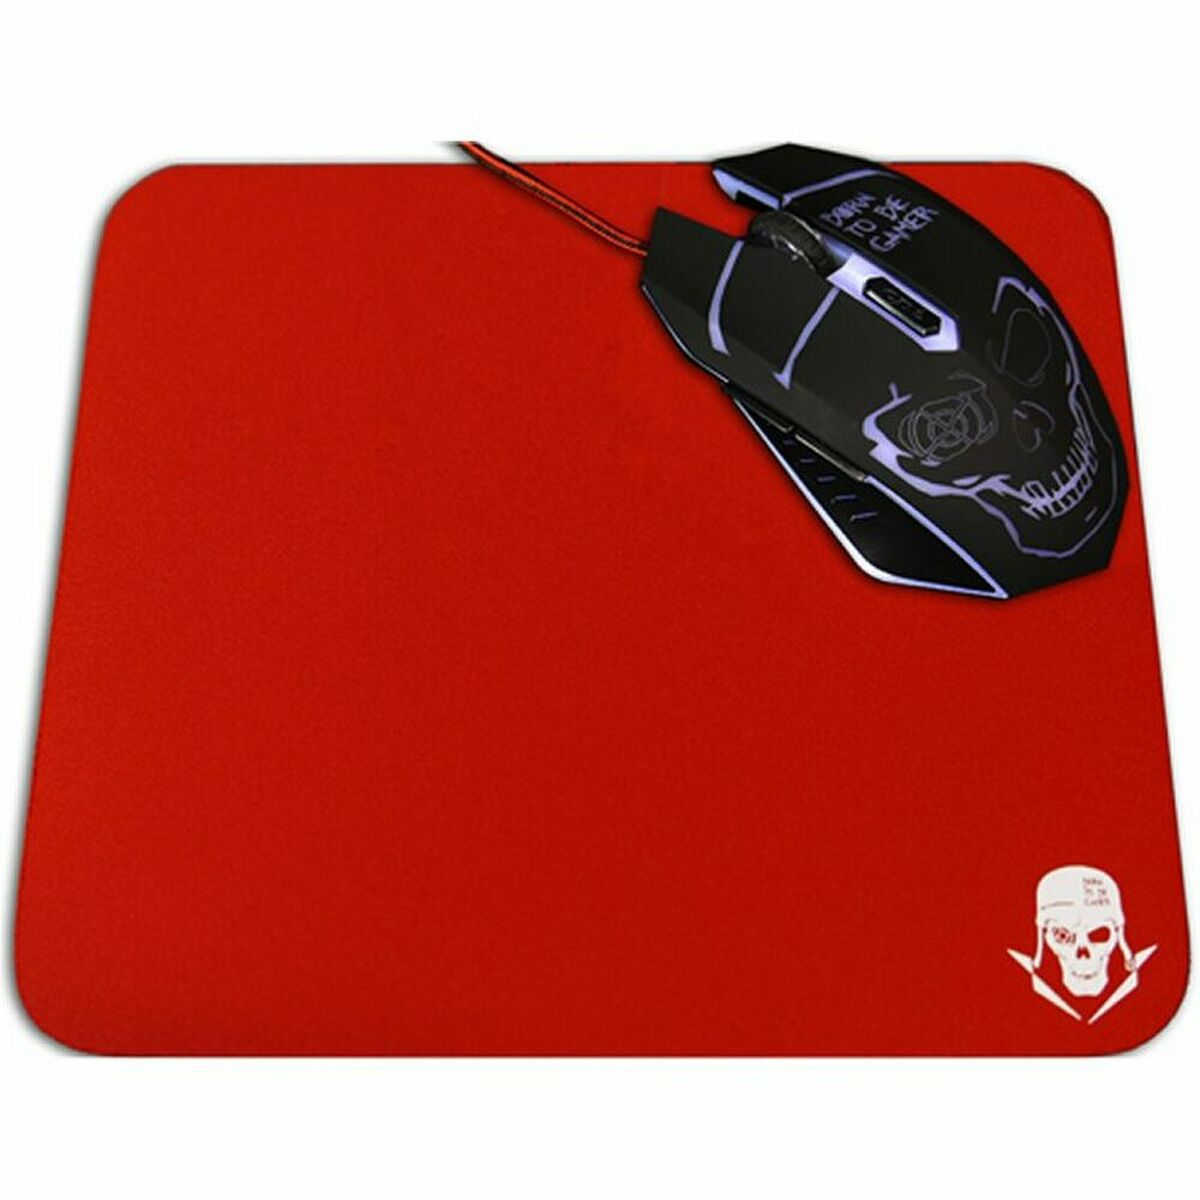 Gaming Mouse Mat Skullkiller GMPR1 sklisser rød